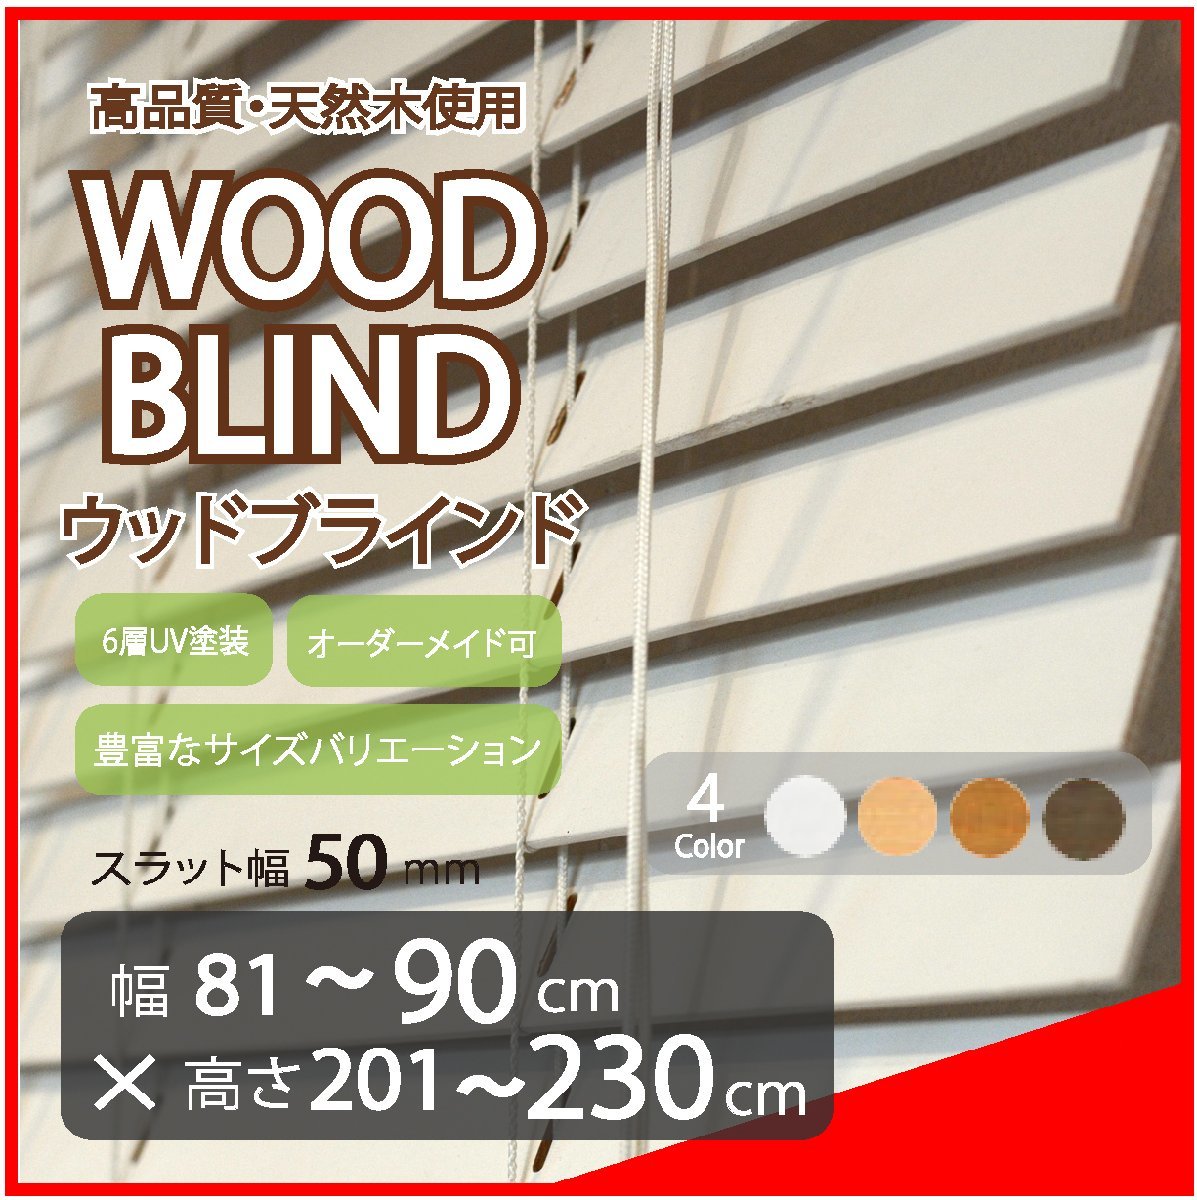 窓枠に合わせてサイズ加工が可能 高品質 木製 ウッド ブラインド オーダー可 スラット(羽根)幅50mm 幅81～90cm×高さ201～230cm